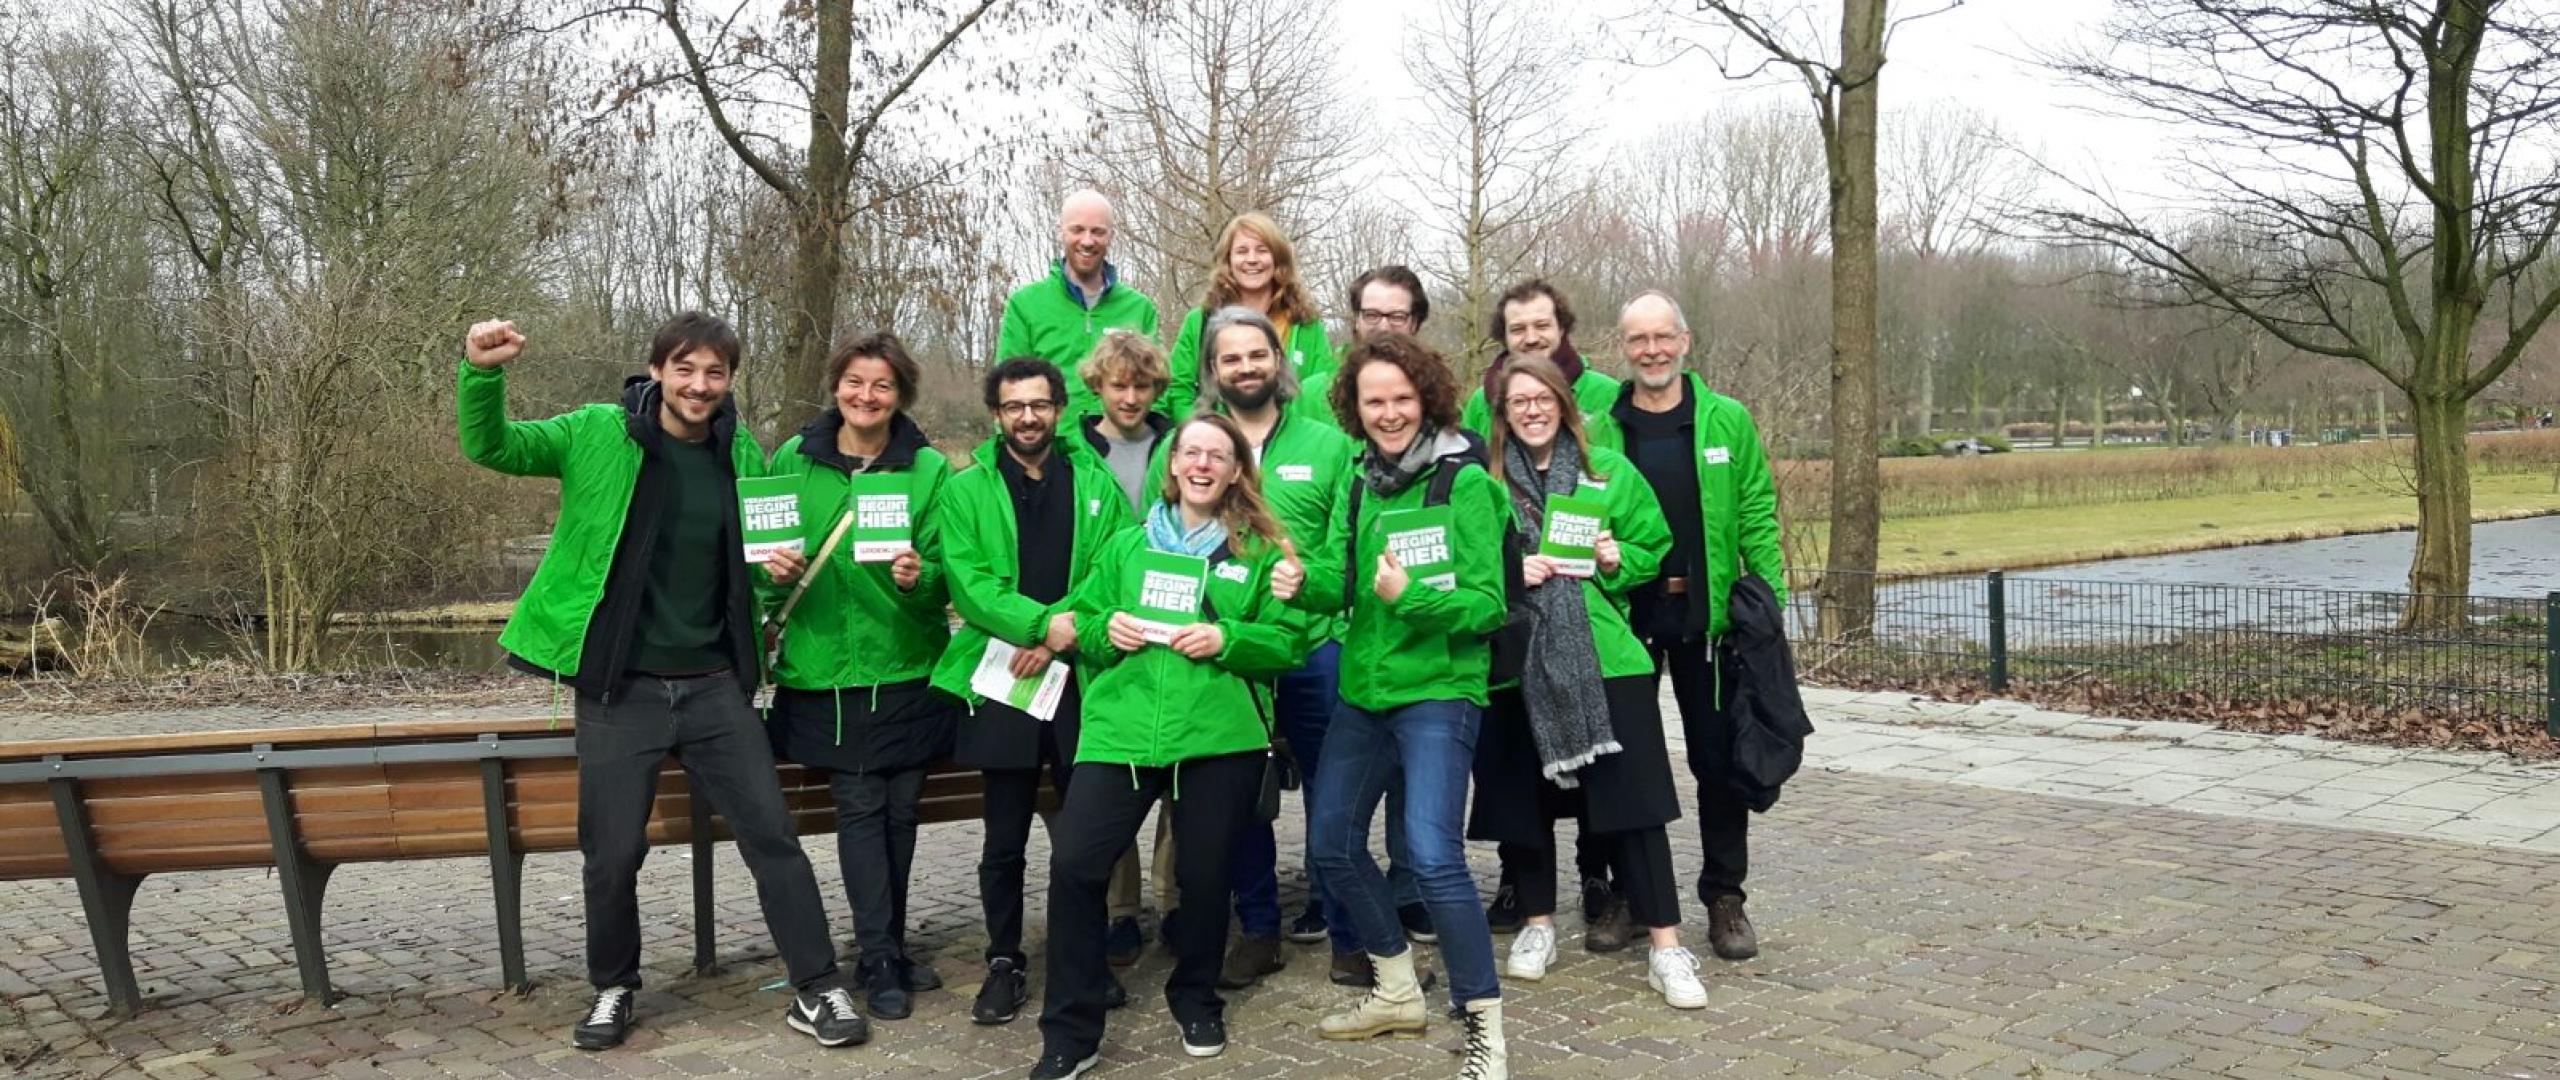 GroenLinks Amsterdam West op campagne